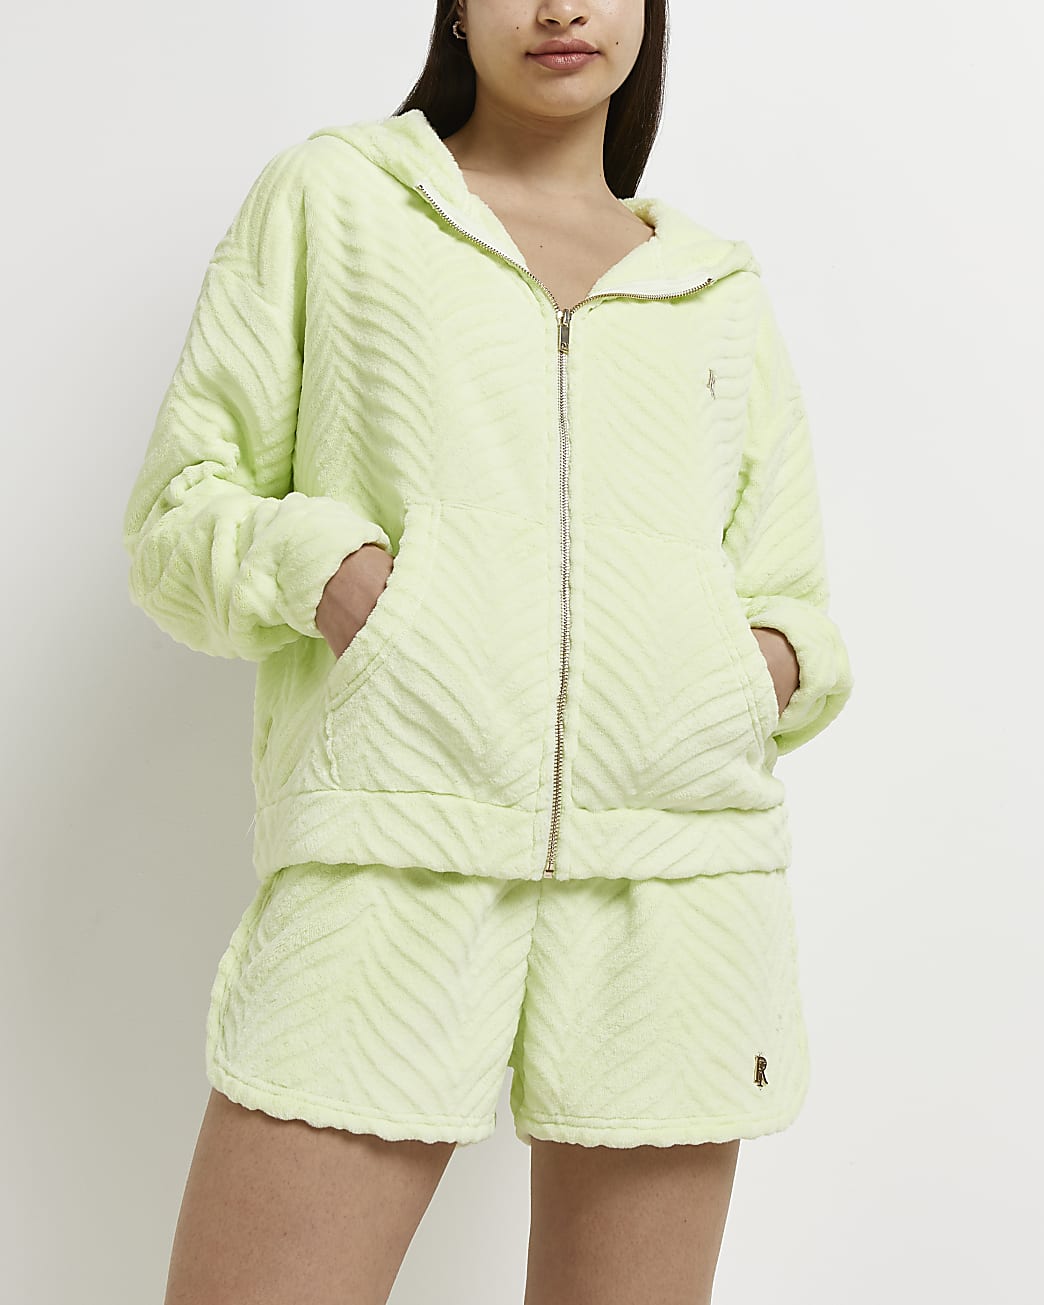 Lime textured zip up hoodie